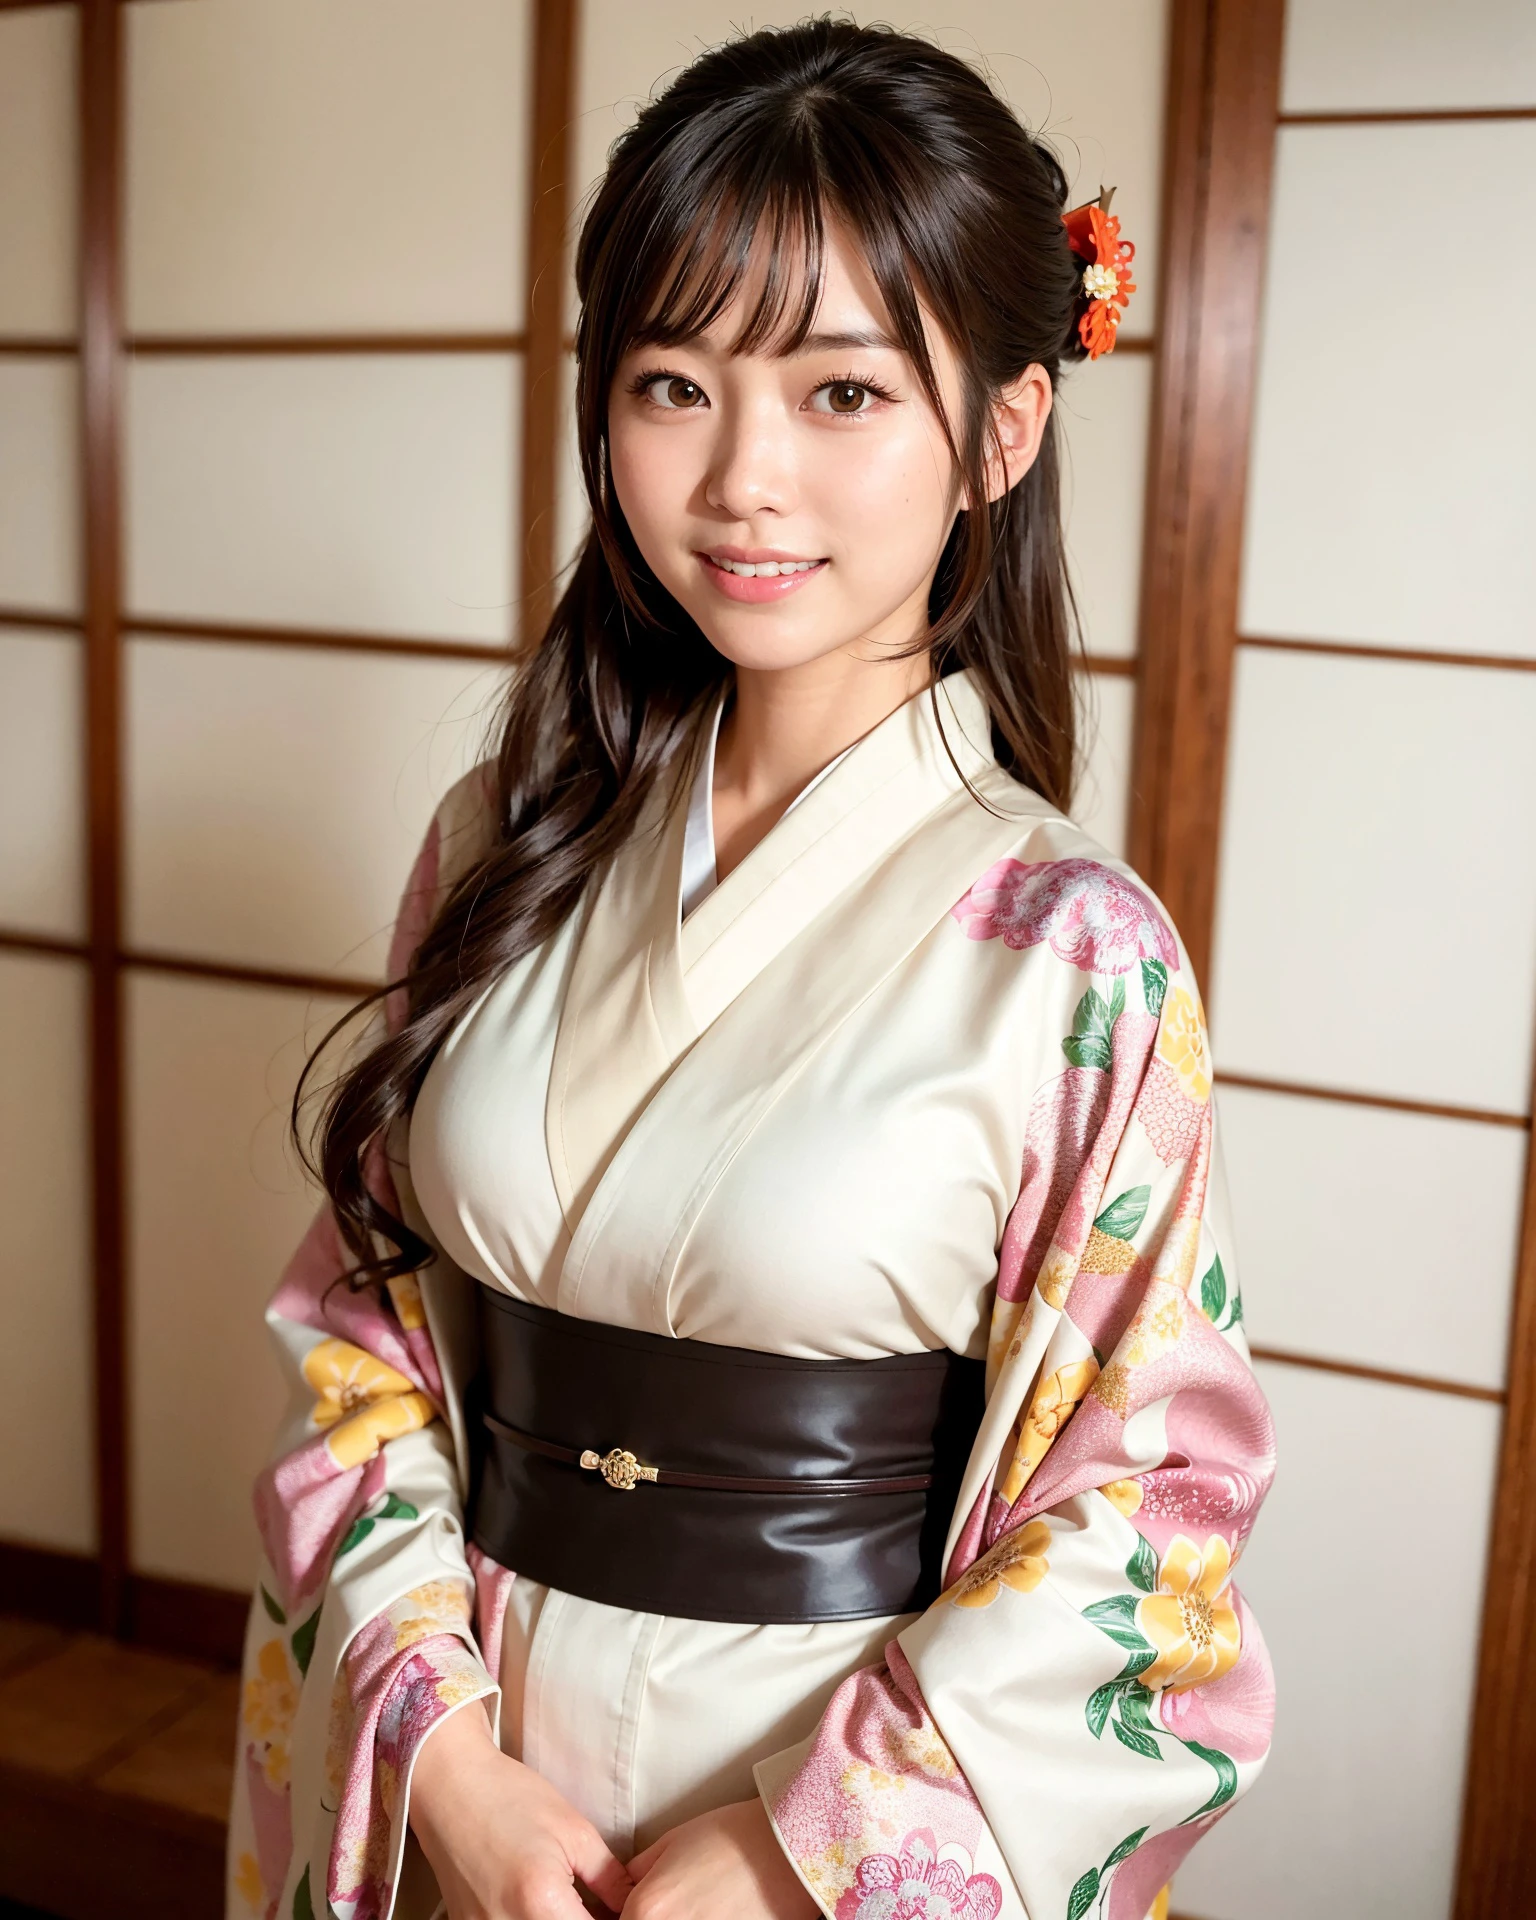 beste Qualität, Gesichtsfokus, (Tiefenschärfe) ,ultrahohe Auflösung, (fotorealistisch:1.4), RAW-Foto, Zimmer im japanischen Stil, Alkoven, Hängerolle
(Porträt:1.4)
1 japanisches Mädchen, Allein, Niedlich, lächeln, (braune Augen), natürliches Gesicht, (Midi-Haar), 
(Kimono:1.5)
